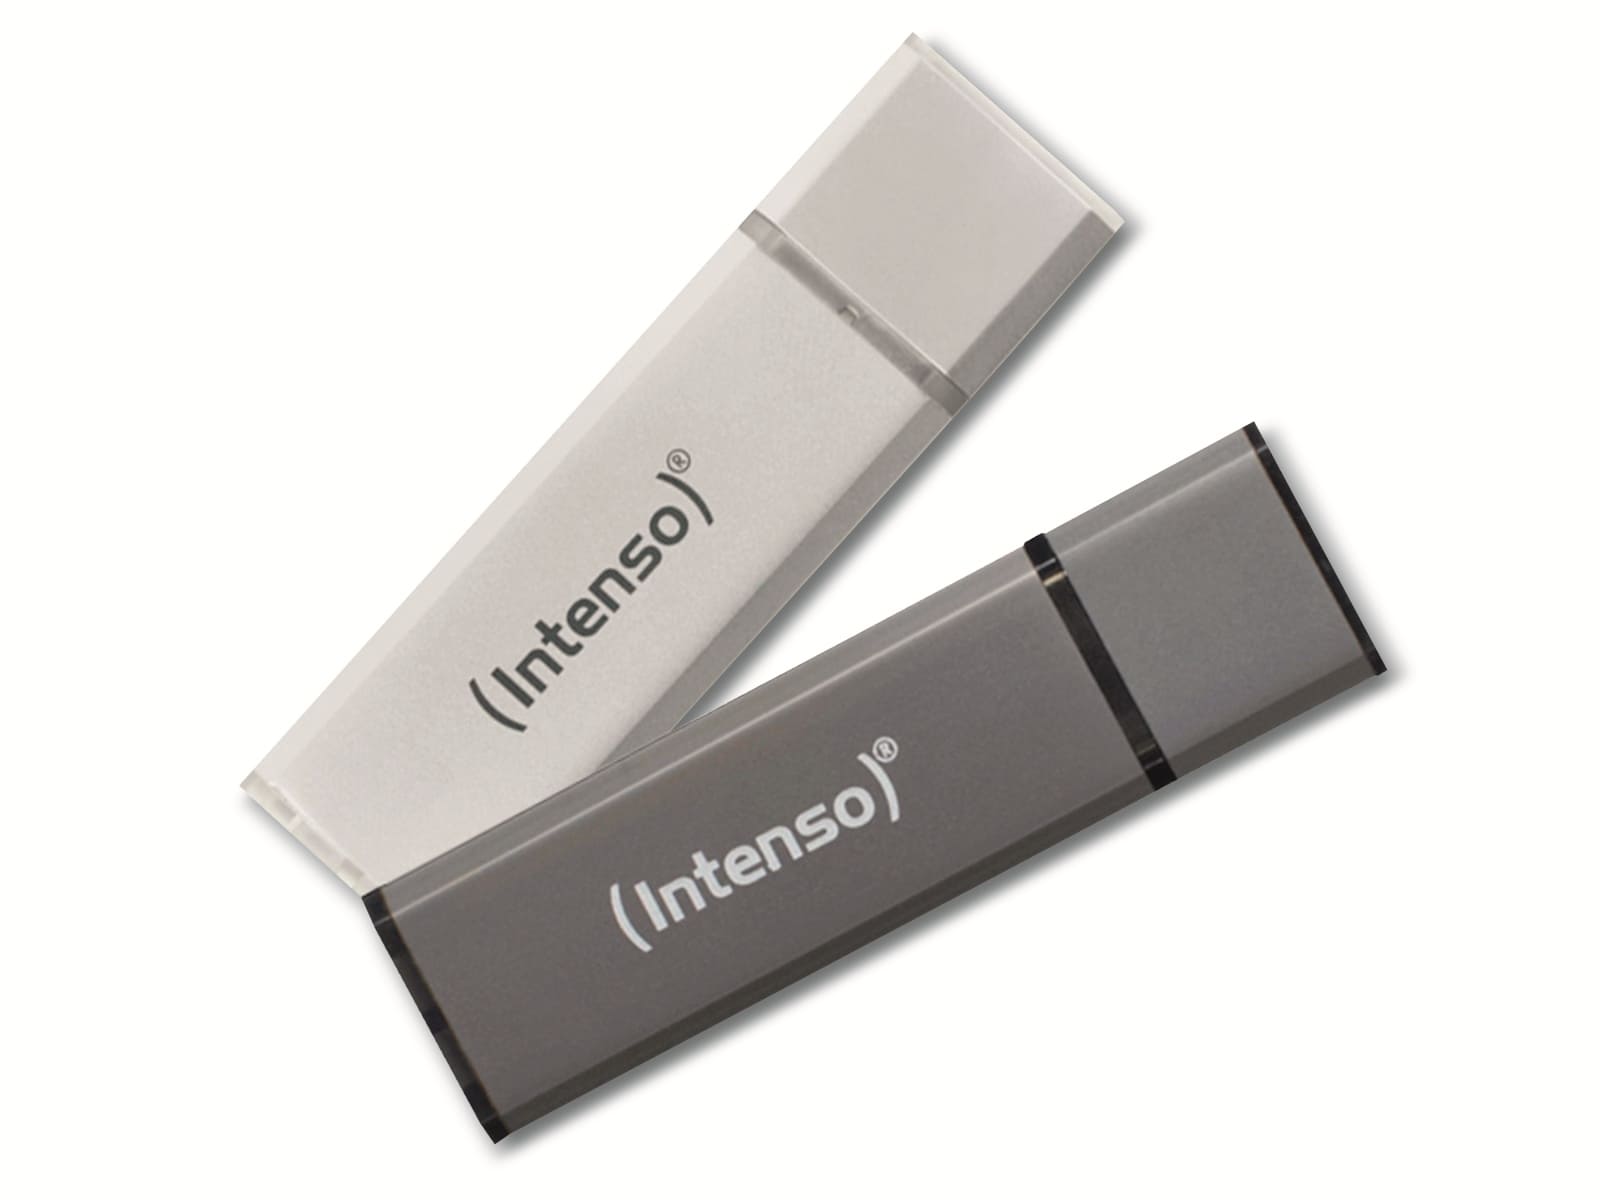 INTENSO USB-Stick Alu Line, 2x 32 GB